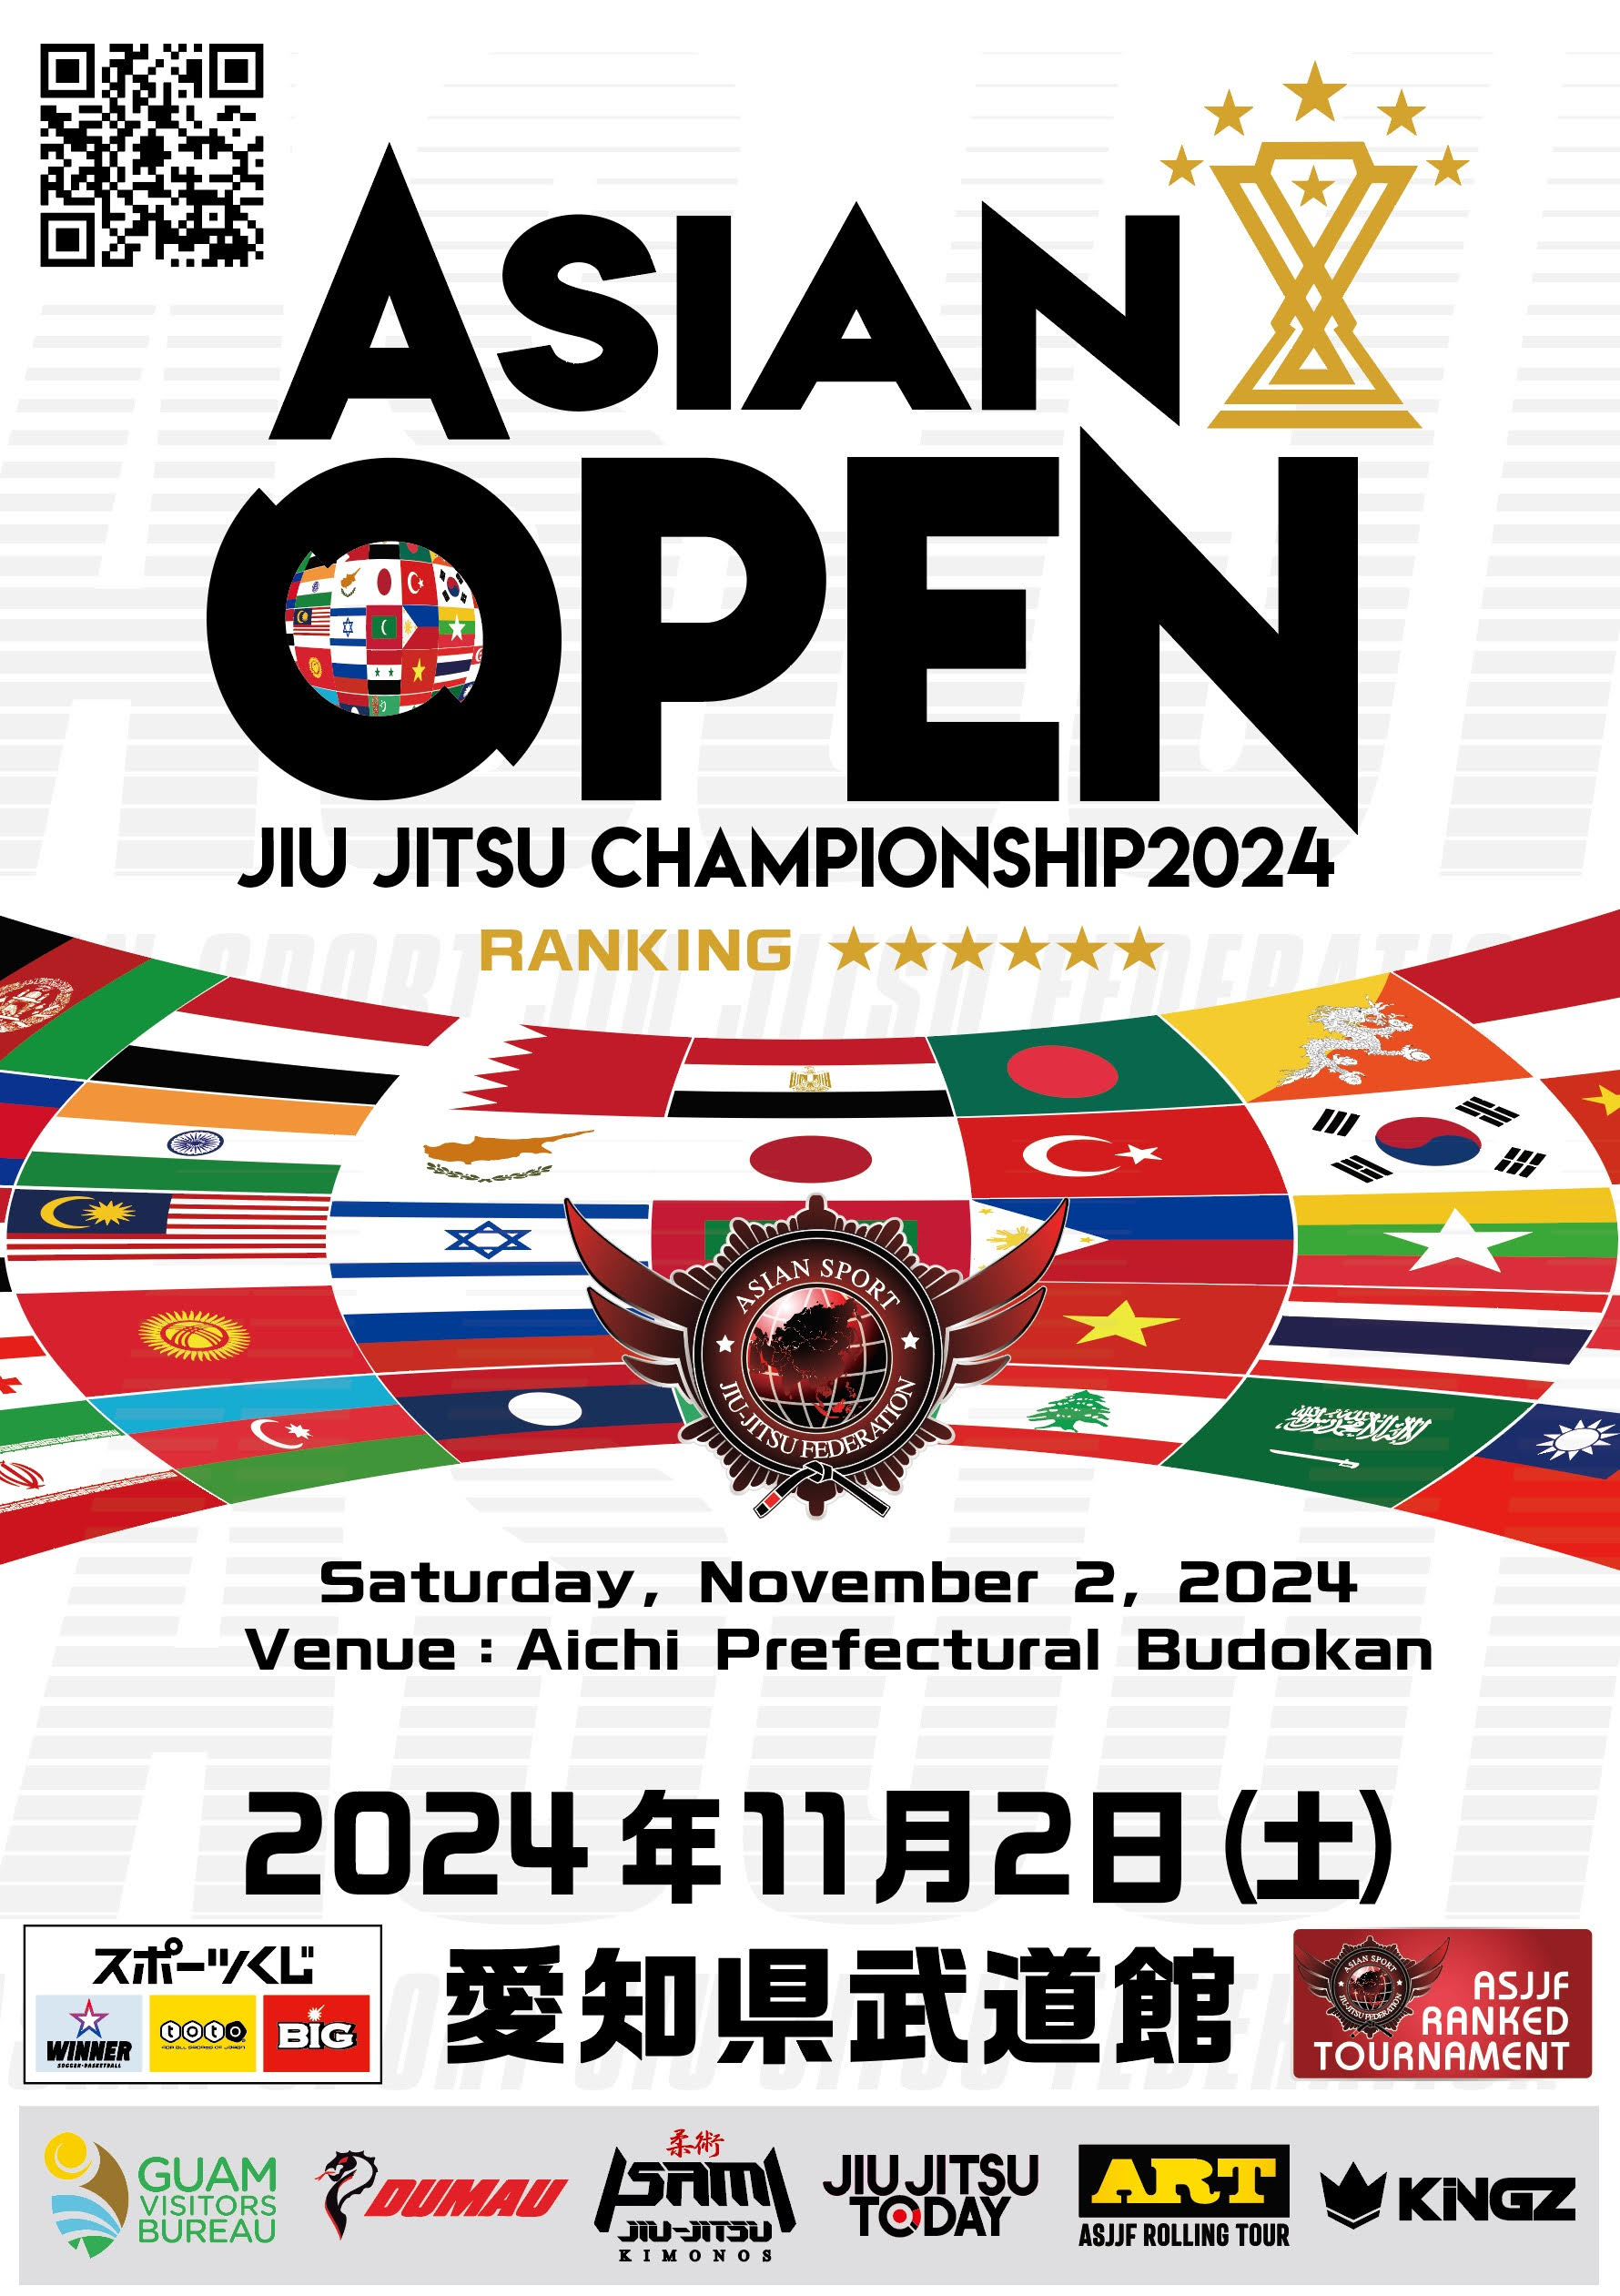 asjjf asian open jiu jitsu championship 2024